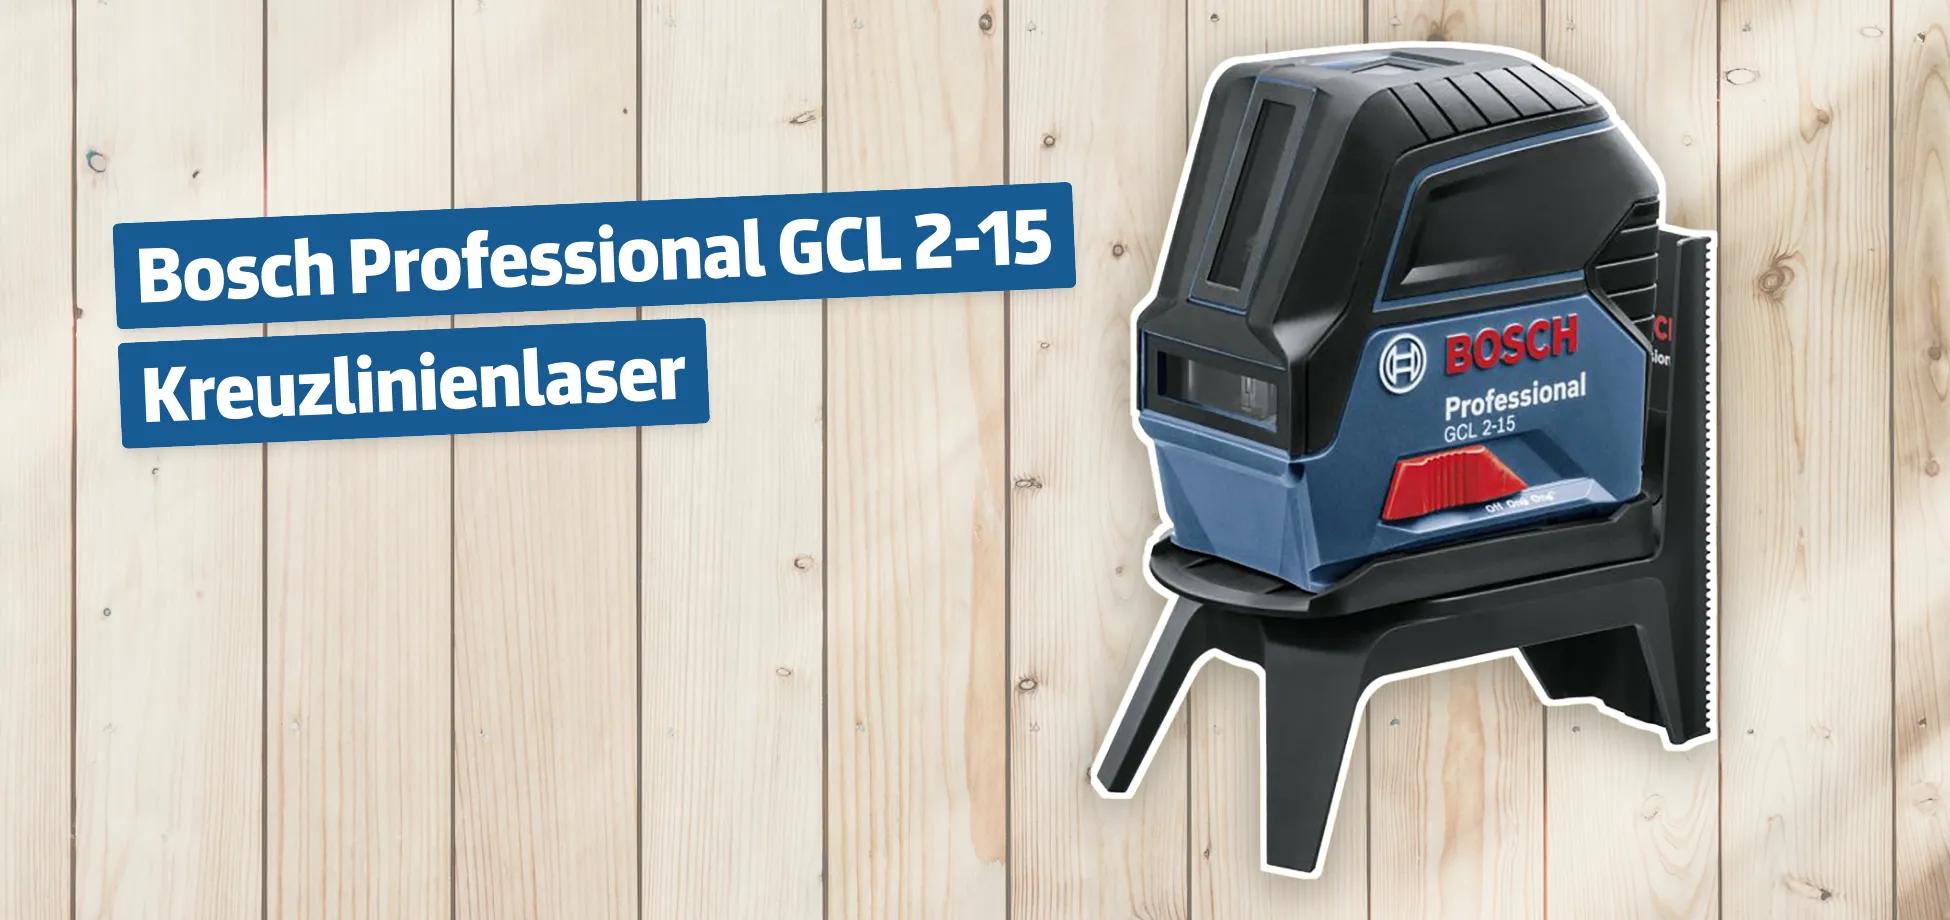 Bosch Professional GCL 2-15 Kreuzlinienlaser